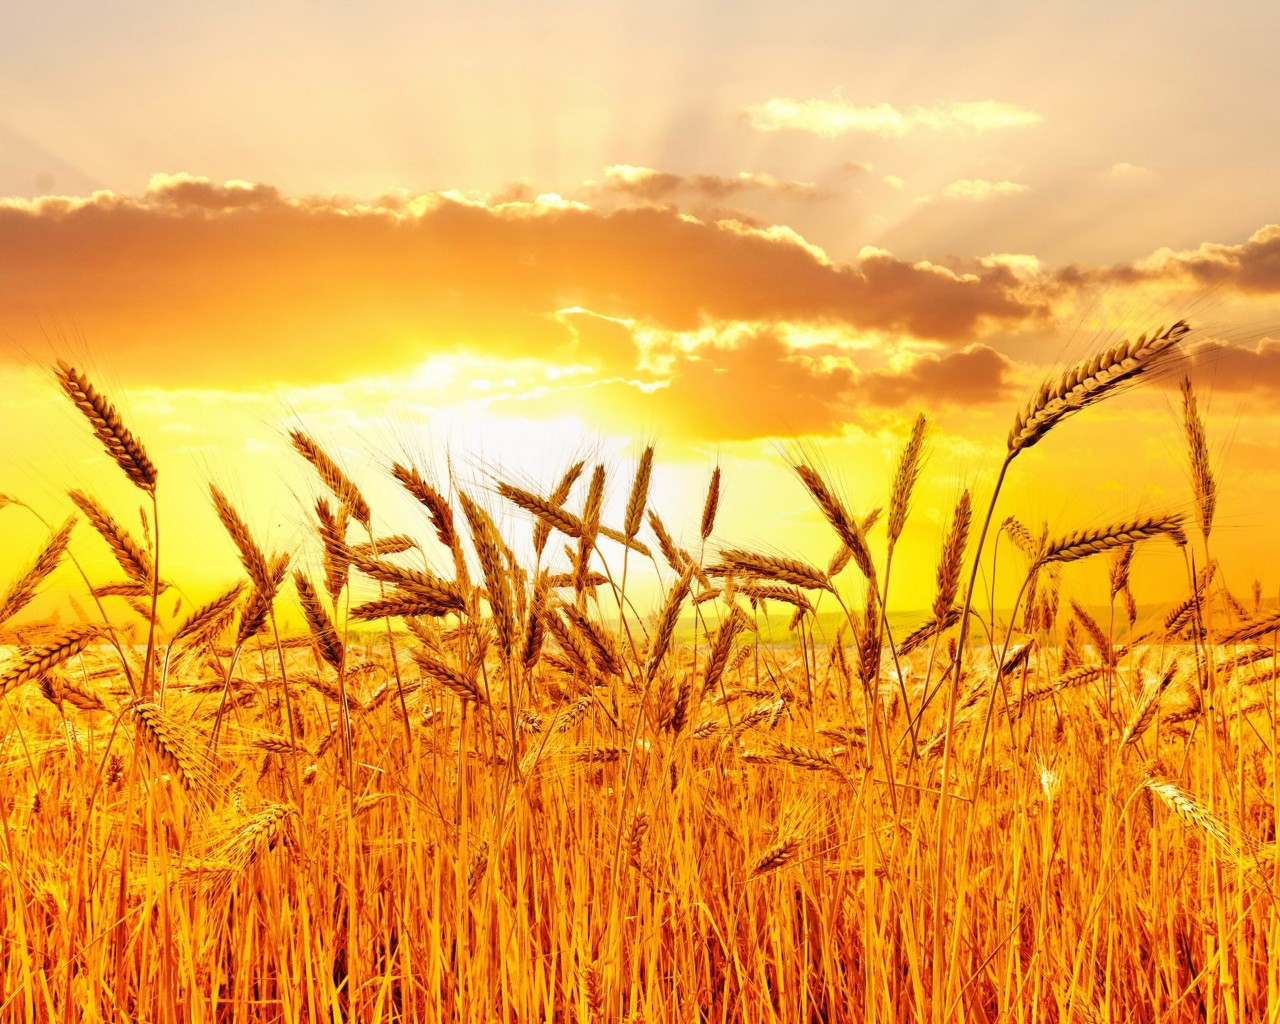 Golden Wheat Field At Sunset Wallpaper for Desktop 1280x1024